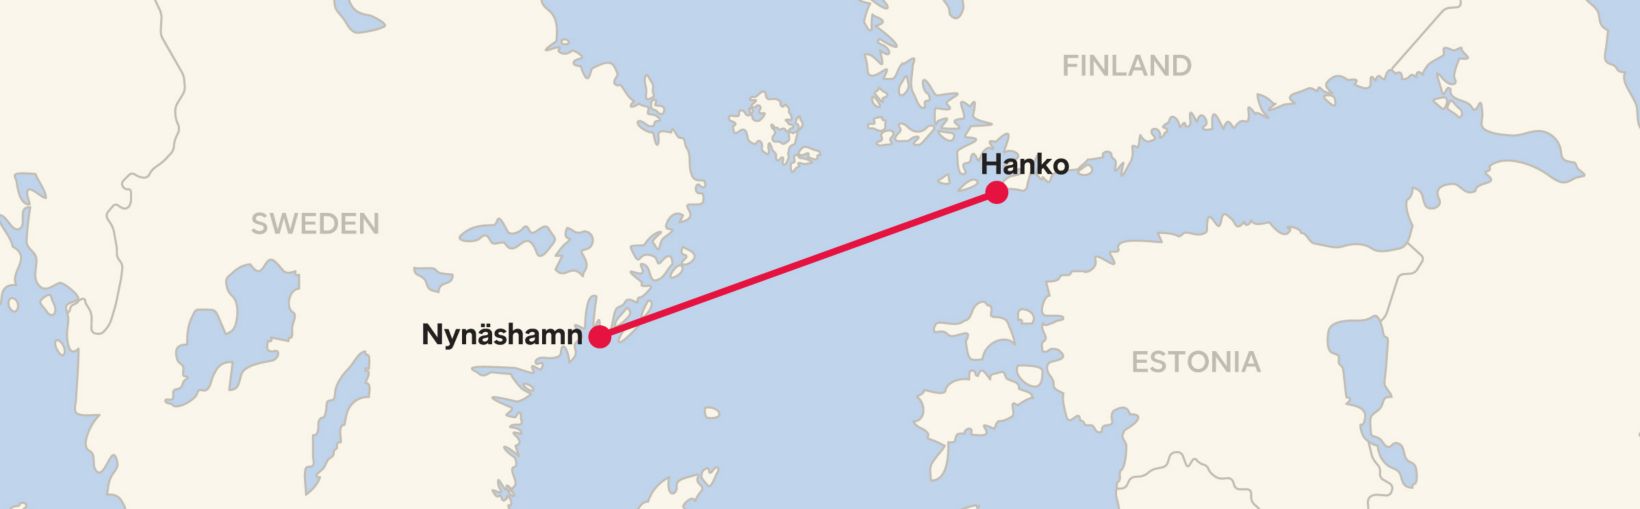 Nynasham Hanko route | Stena Line